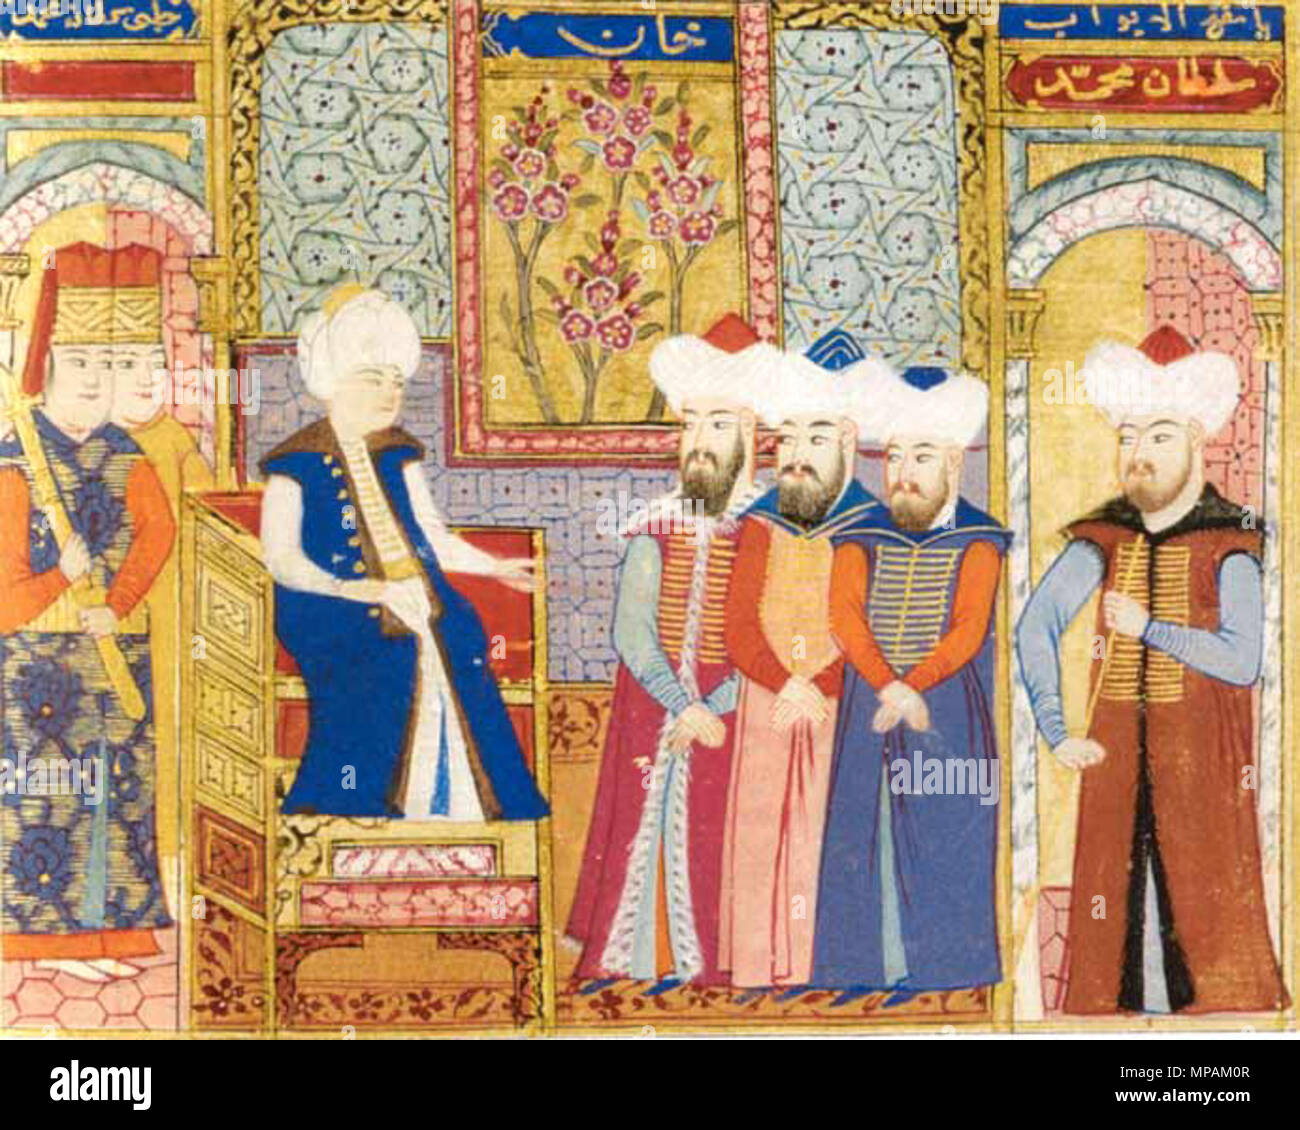 . Le Sultan Mehmed I avec ses dignitaires. Peinture miniature ottomane, conservé à Istanbul, Istanbul Üniversitesi Rektörlügü (Inv. T 5970, fol 264v) . Entre 1413 et 1421. Peintre miniature Ottoman Mehmet I 880 miniature honorifiques Banque D'Images